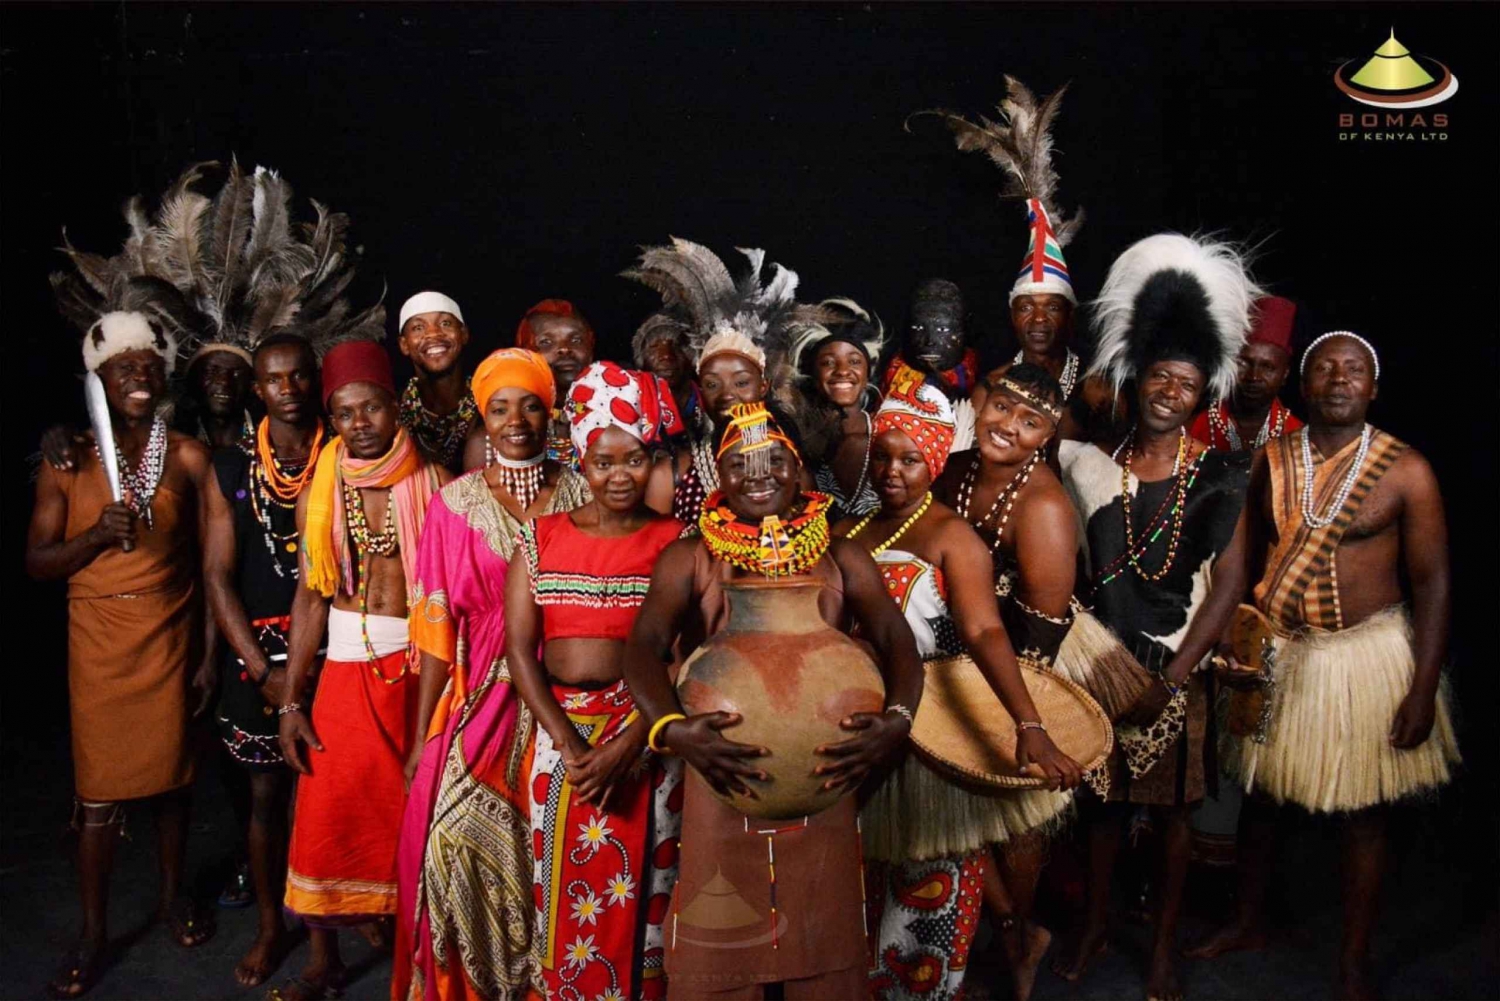 Doświadczenie kulturowe Bomas Of Kenya